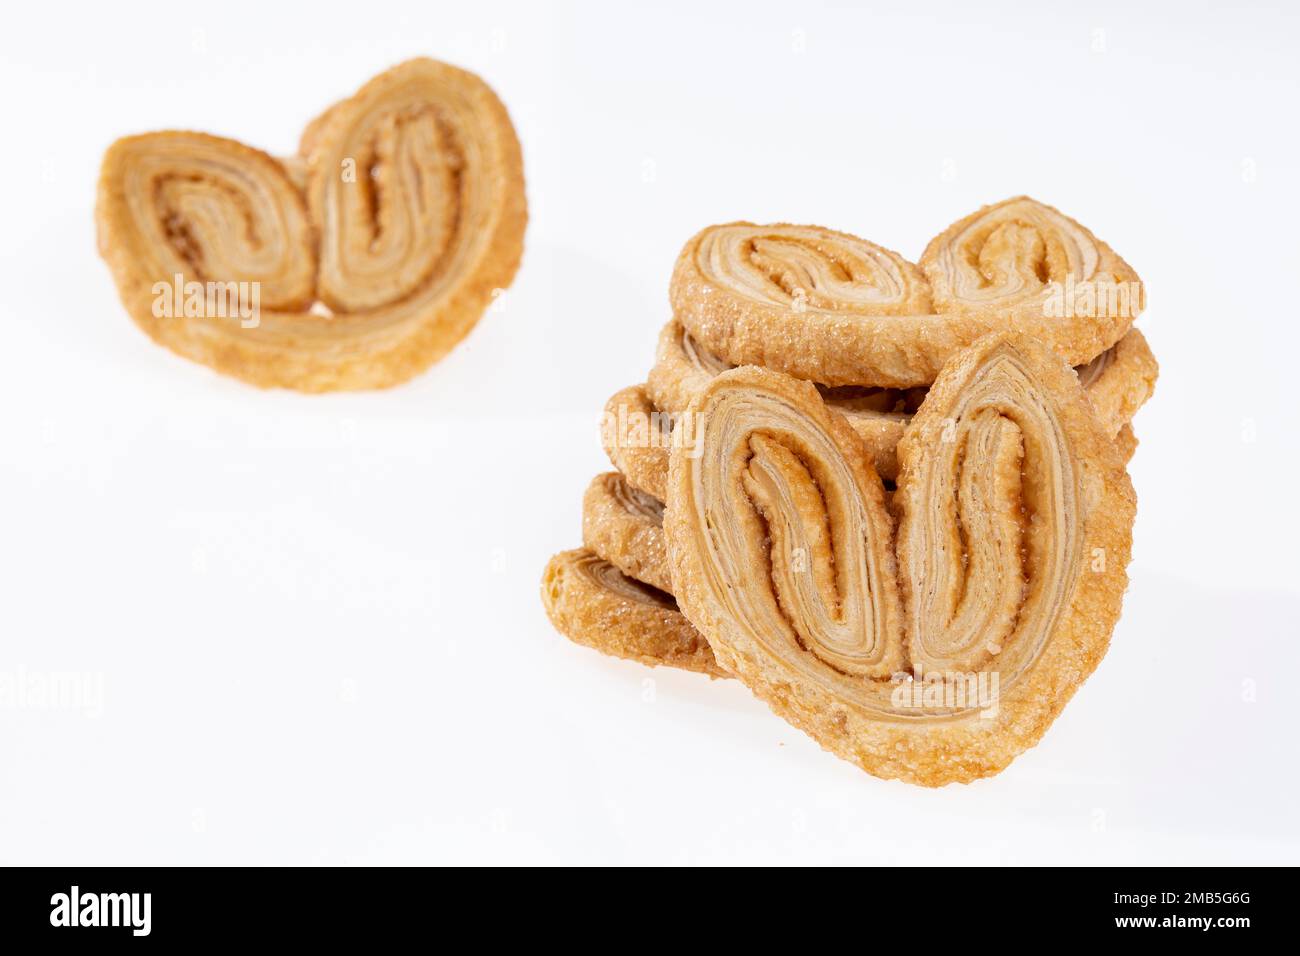 Bäckerei Und Gebäck – Leckere Blätterteigherzen Mit Zucker Bedeckt; Weißer Fotohintergrund Stockfoto